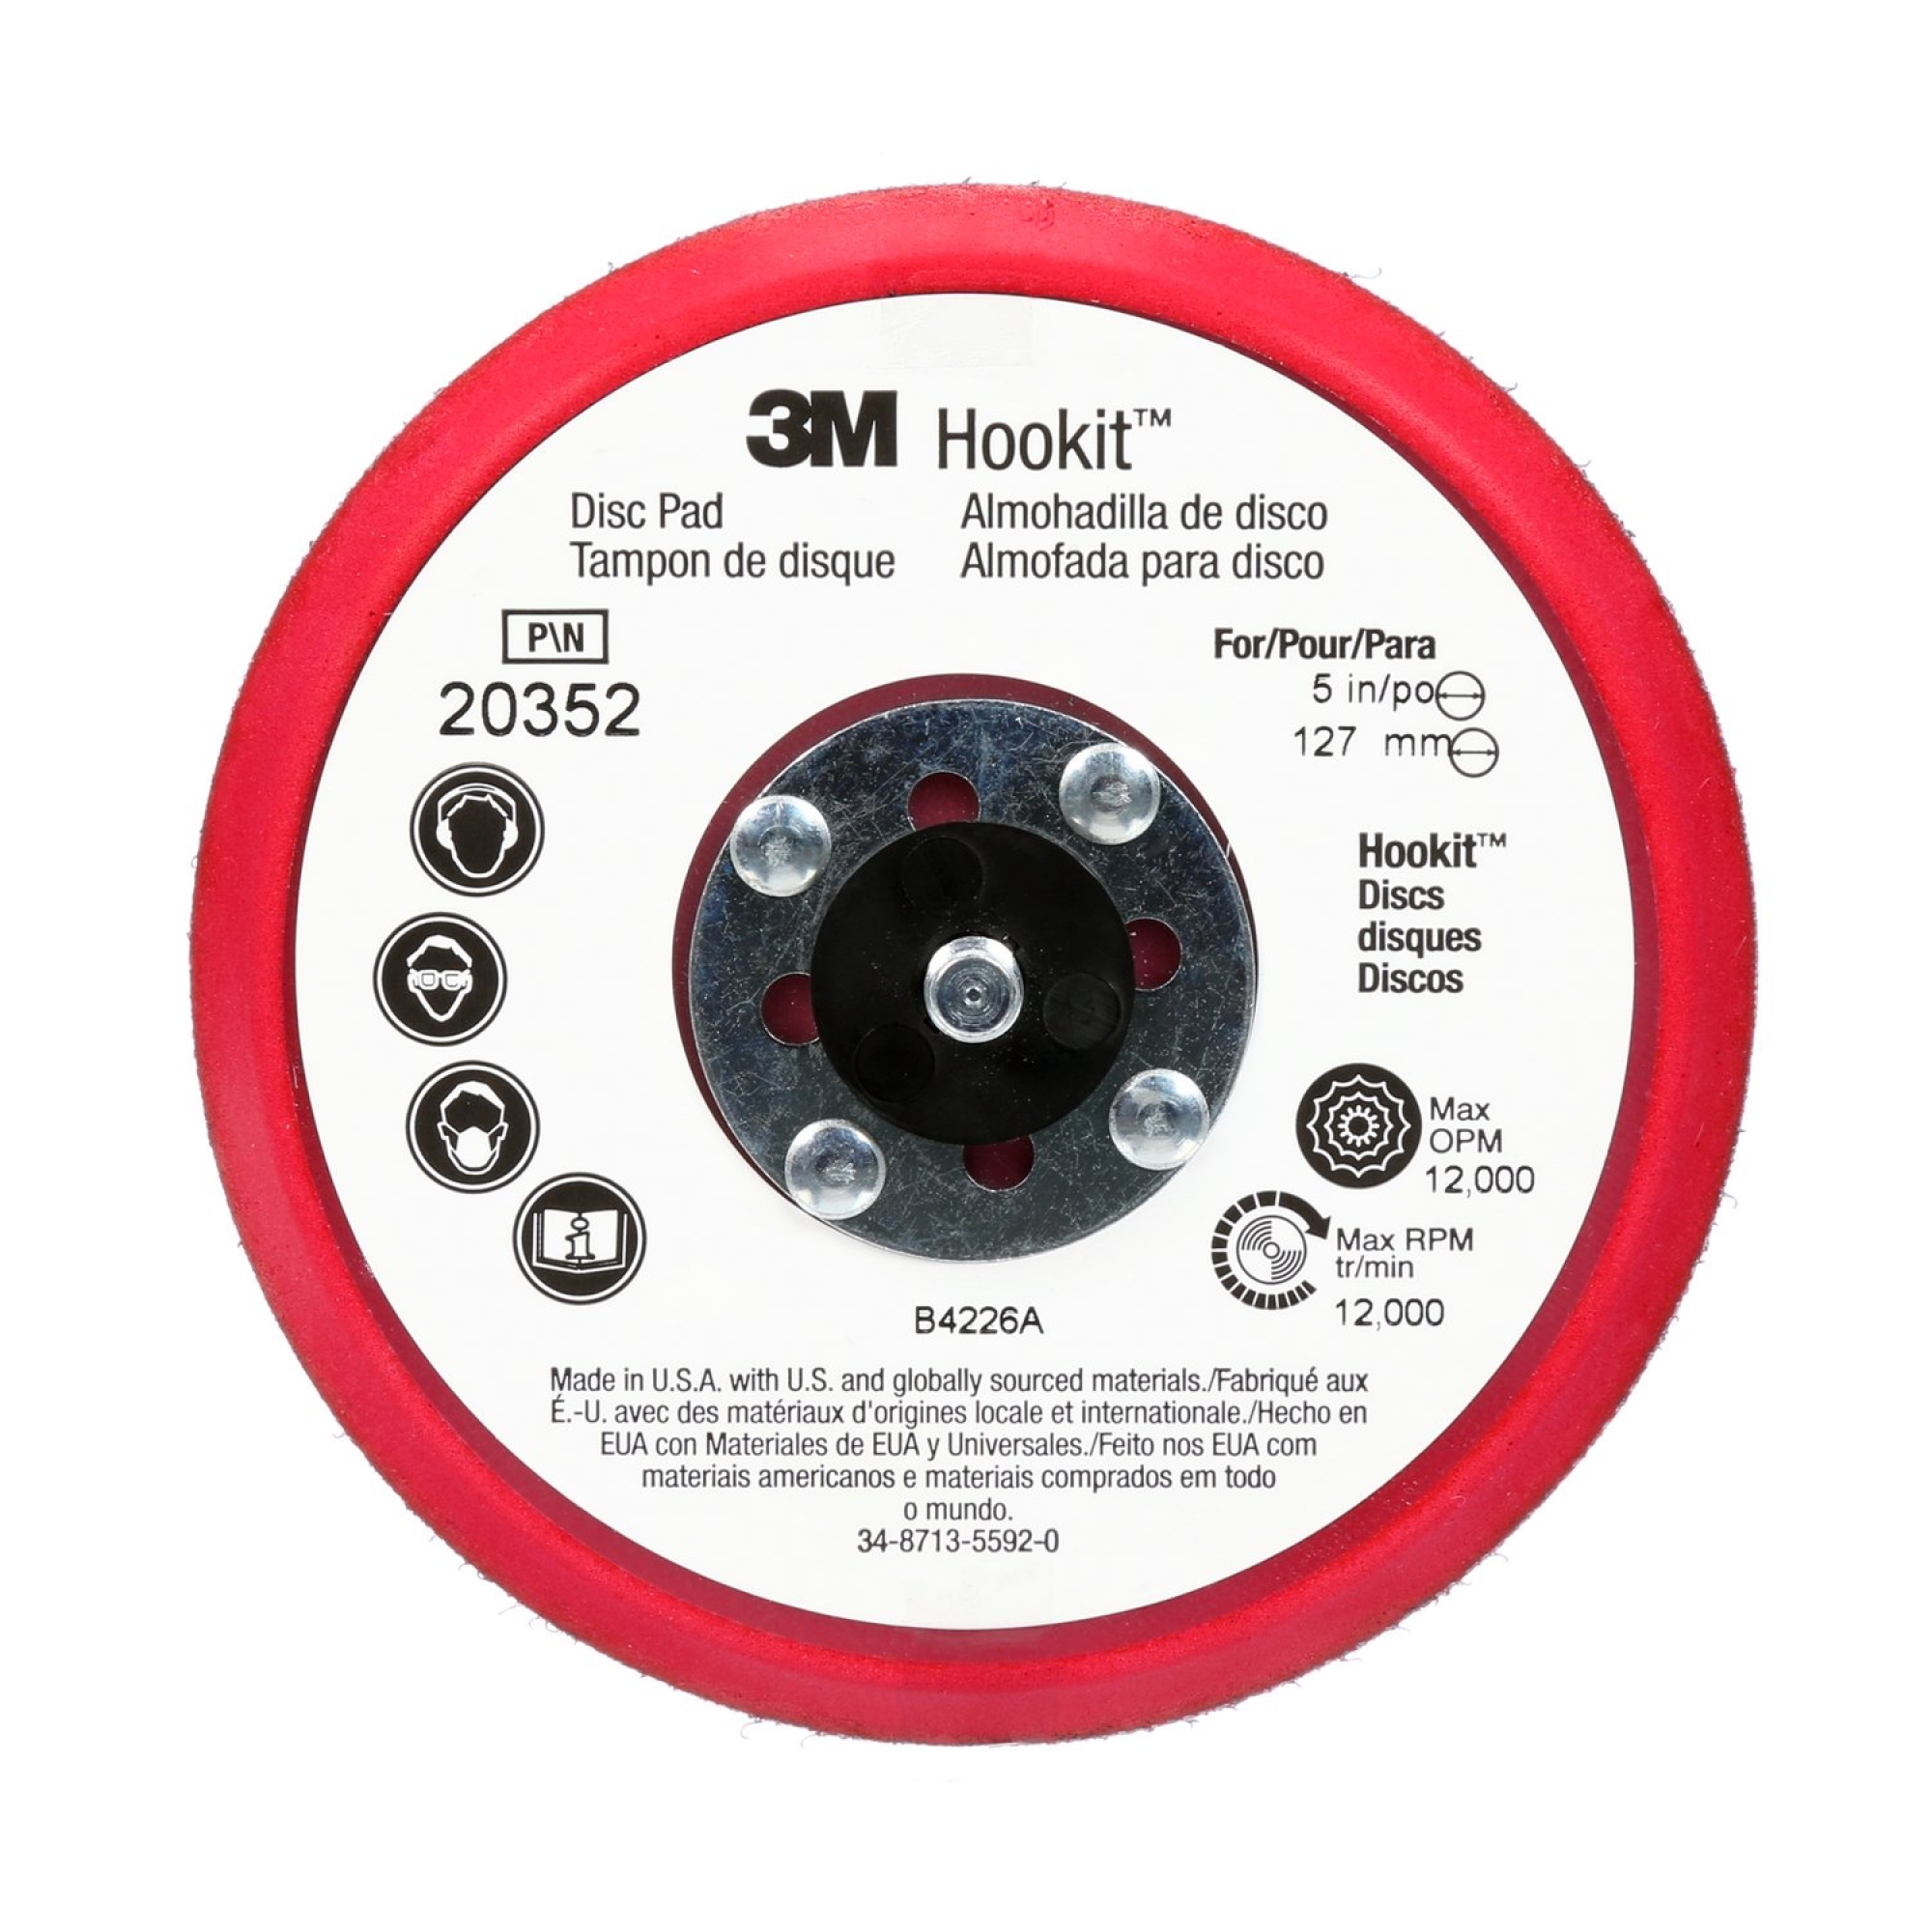 3M™ Hookit™ 20352, Ø 125 mm x 9,5 mm x 7,9 mm Stützteller mit Low Profile, Ungelocht in Rot, zur Aufnahme von kletthaftenden und selbstklebenden Schleifscheiben für den 3M™ Exzenterschleifer